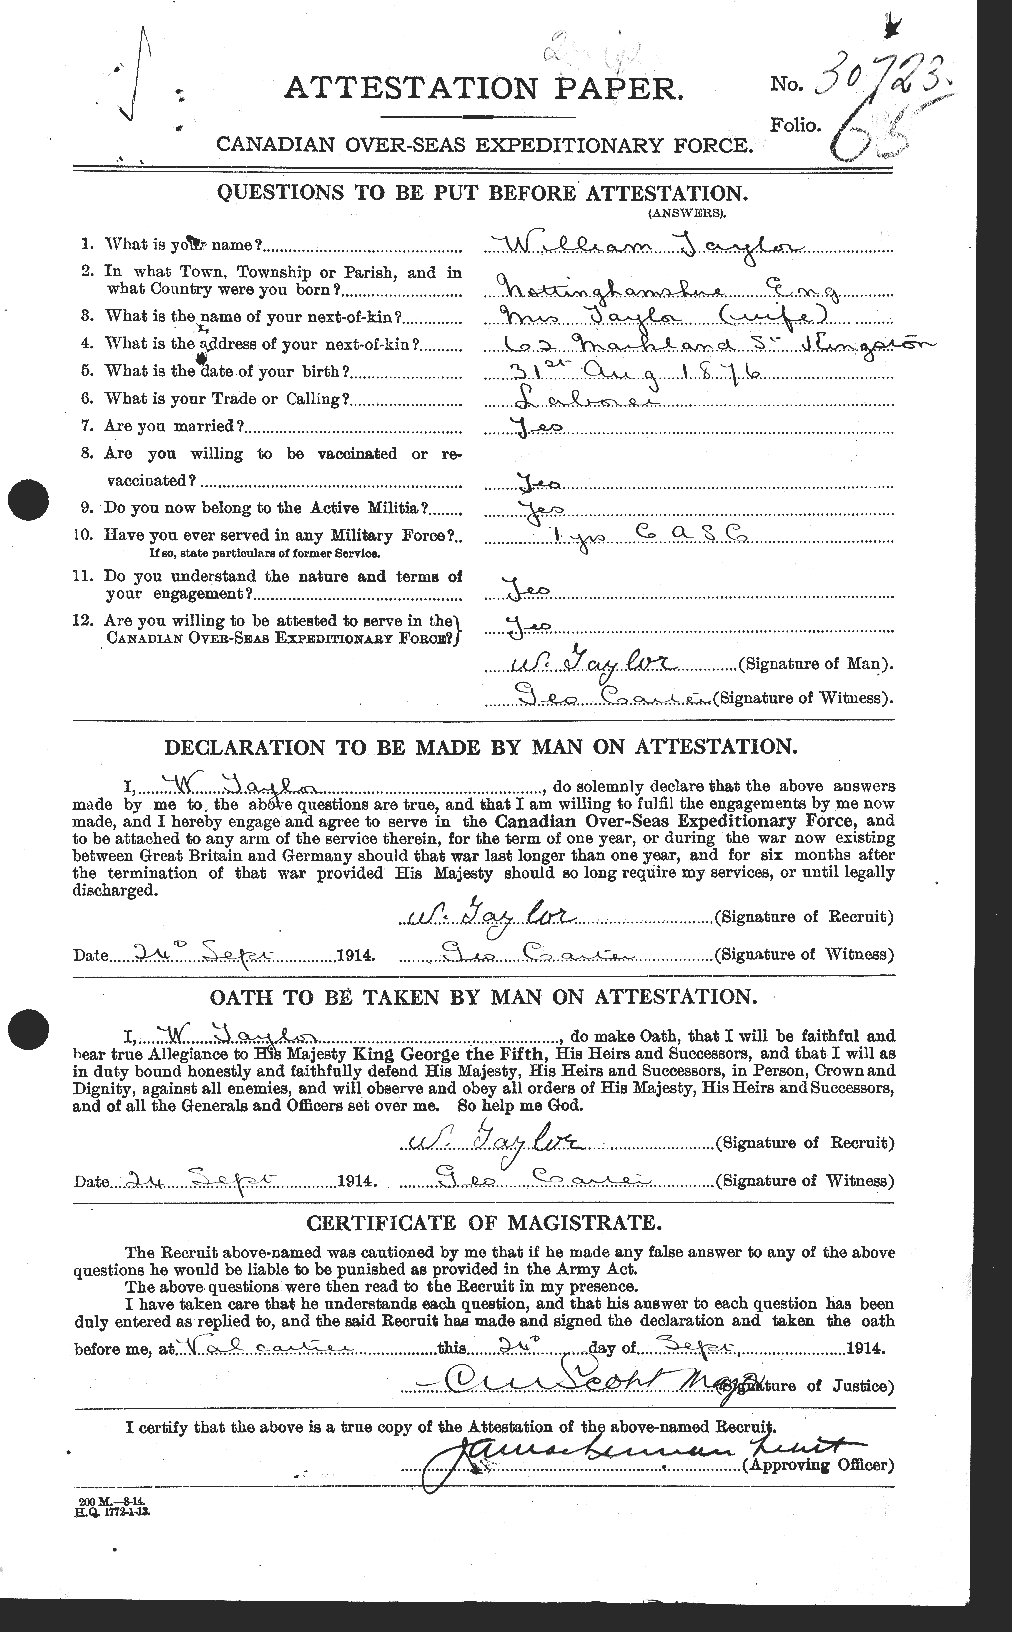 Dossiers du Personnel de la Première Guerre mondiale - CEC 628107a